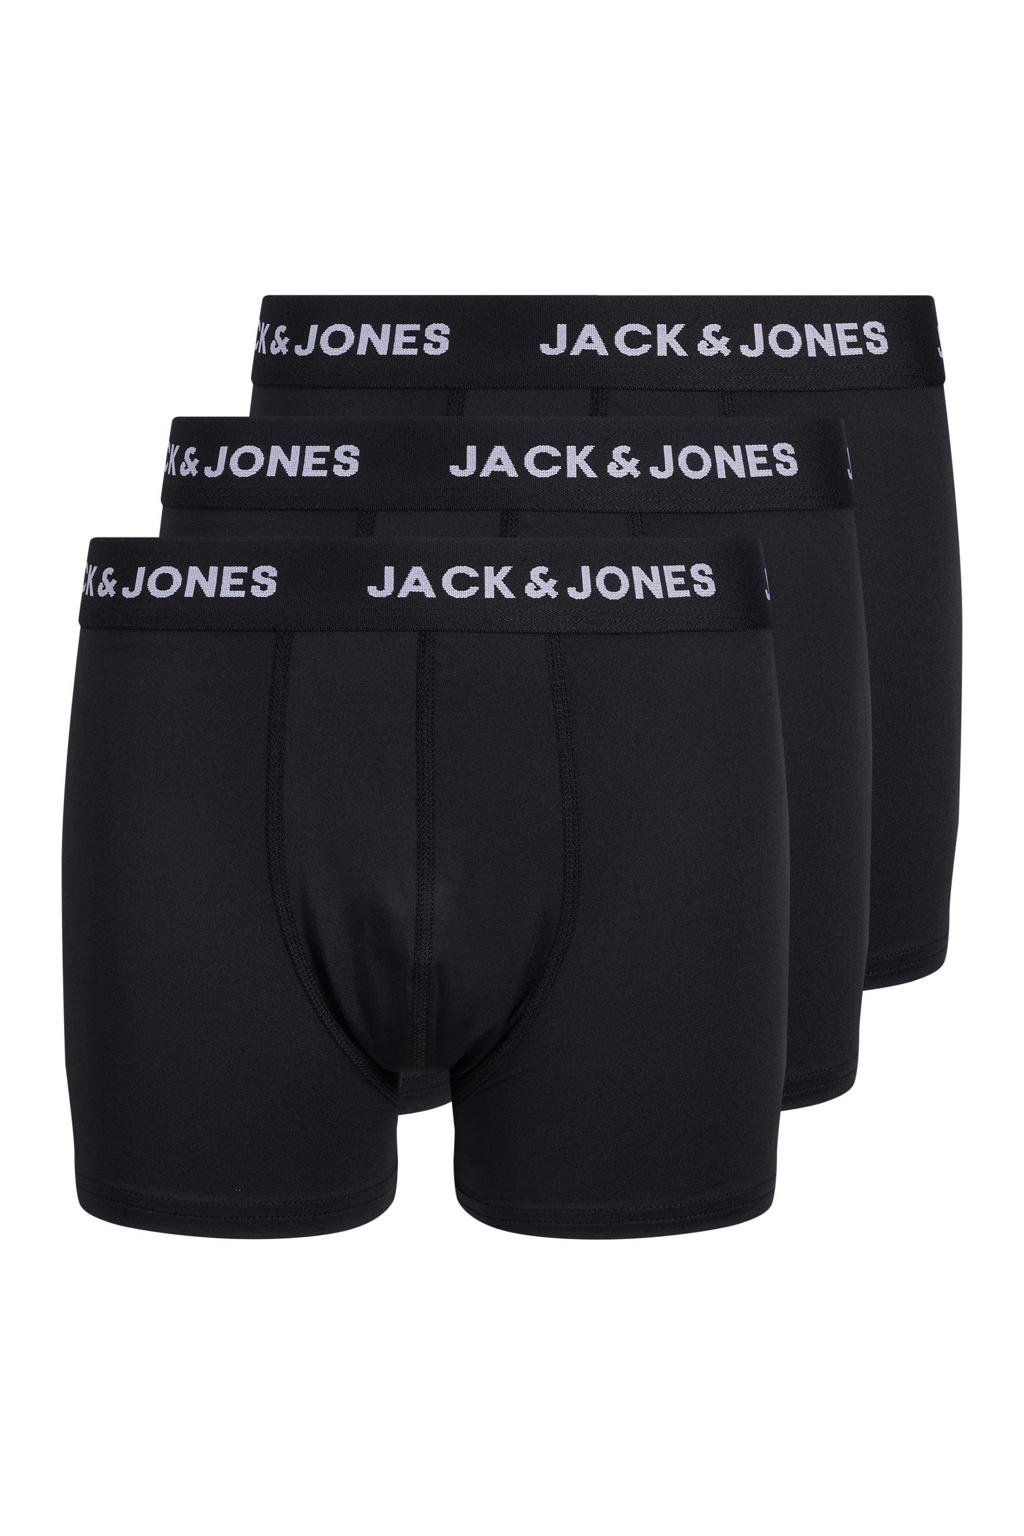 JACK & JONES JUNIOR   boxershort - set van 3 zwart